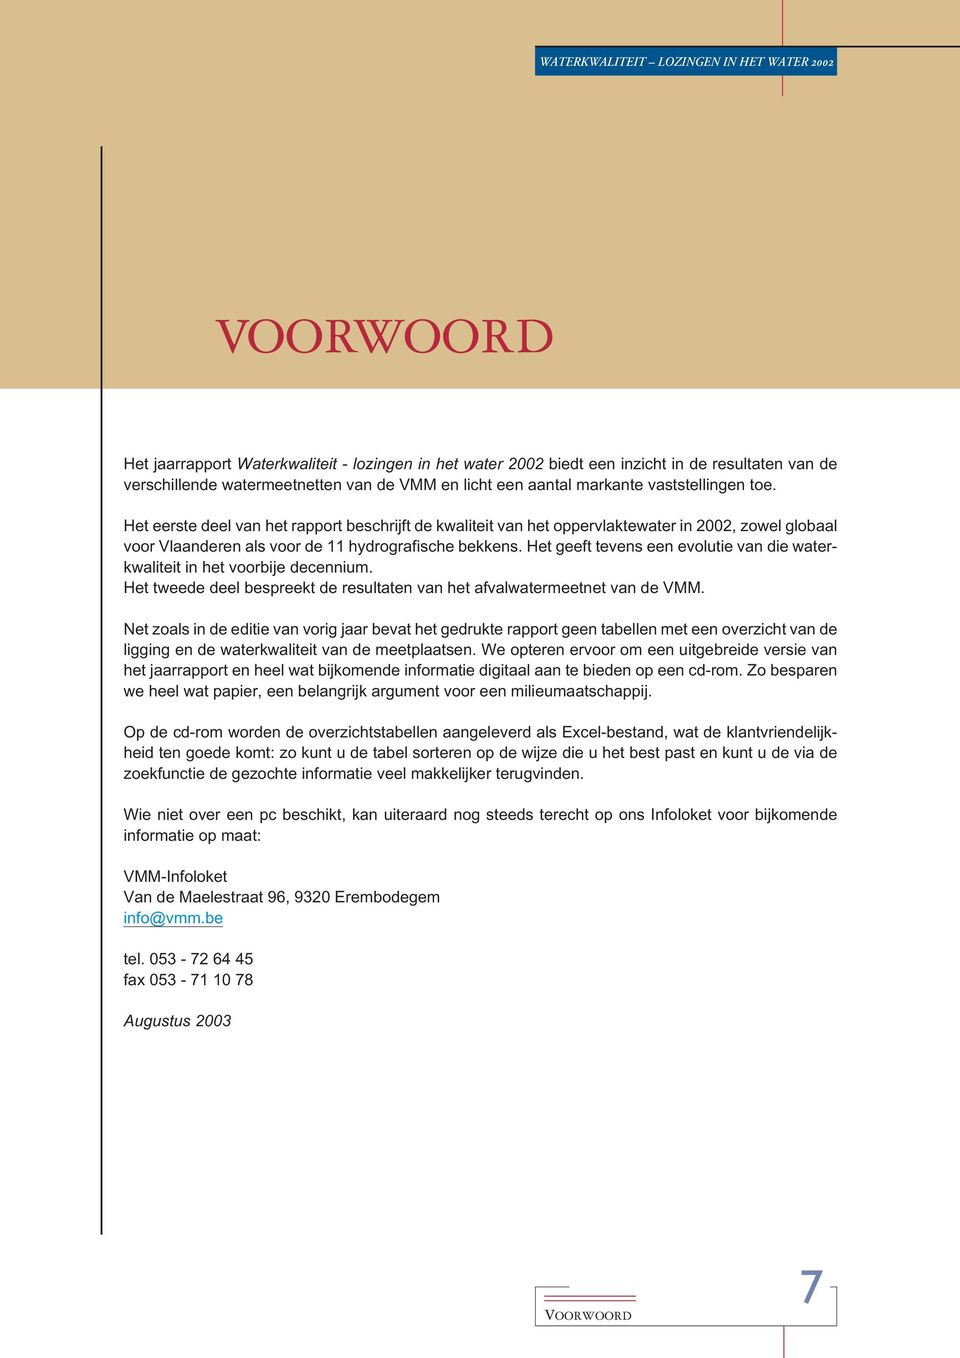 Het eerste deel van het rapport beschrijft de kwaliteit van het oppervlaktewater in 2002, zowel globaal voor Vlaanderen als voor de 11 hydrografische bekkens.